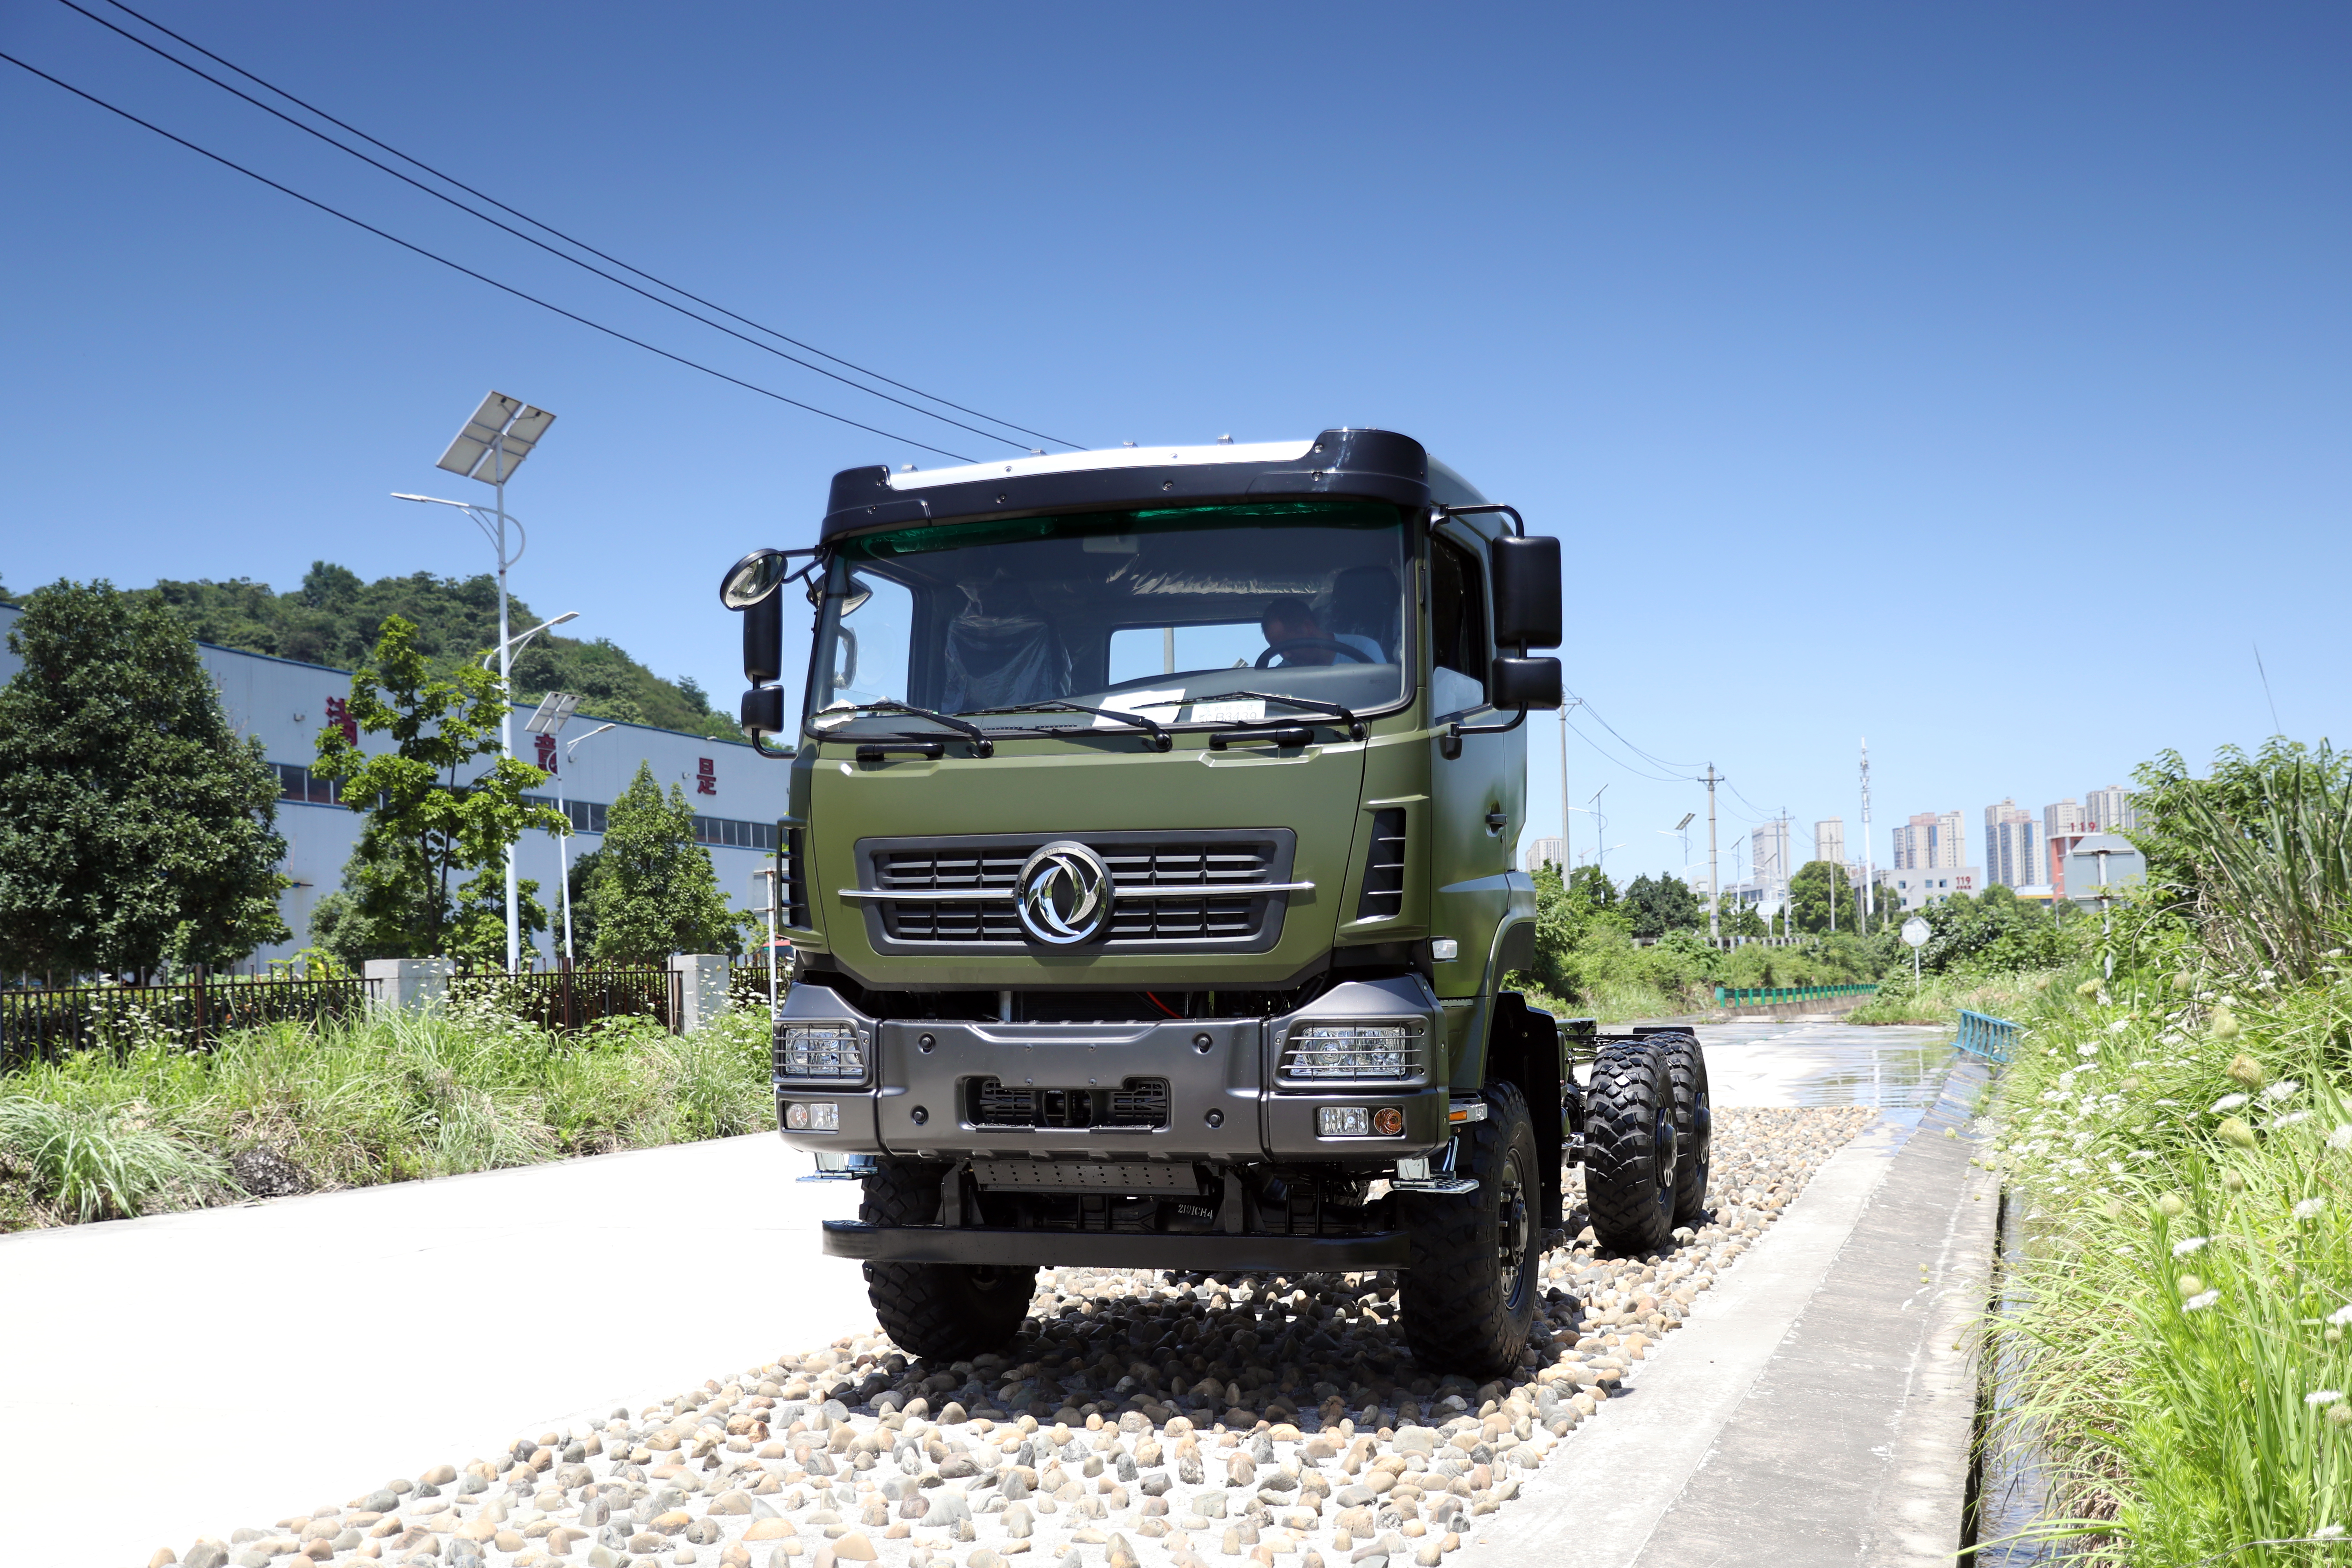 “Khung gầm Dongfeng 6WD 25 tấn dành cho xe tải nặng với đầy đủ vật liệu